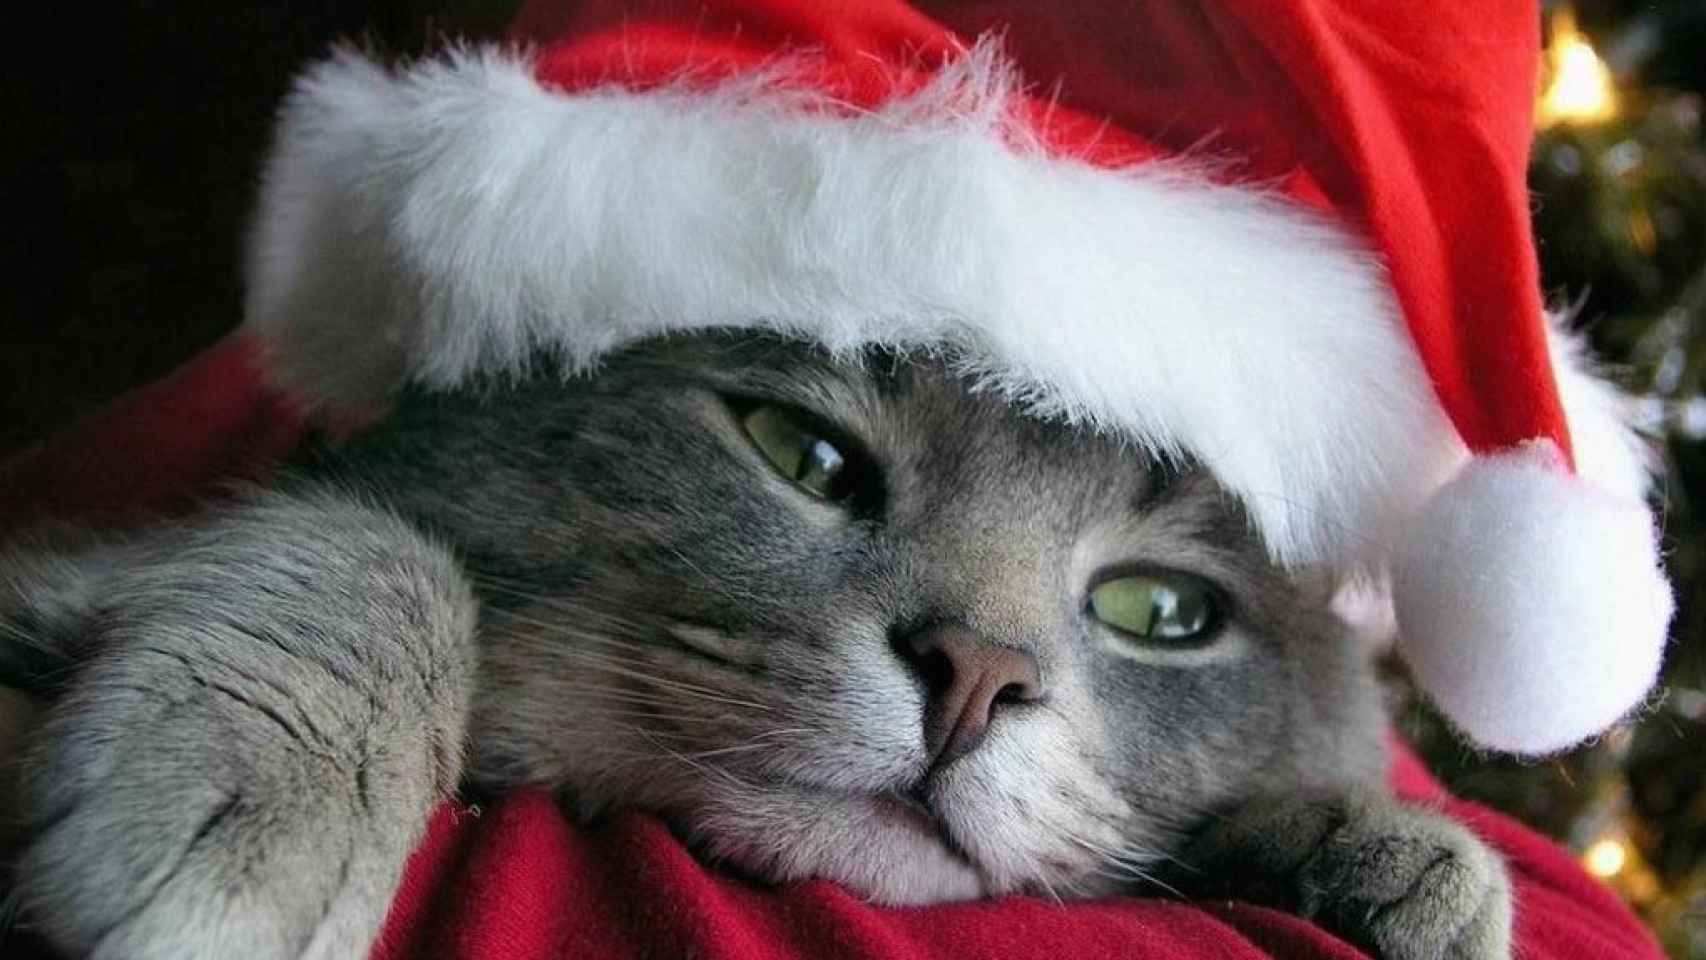 Los mejores iconos y fondos de pantalla: Especial Gatitos y Navidad